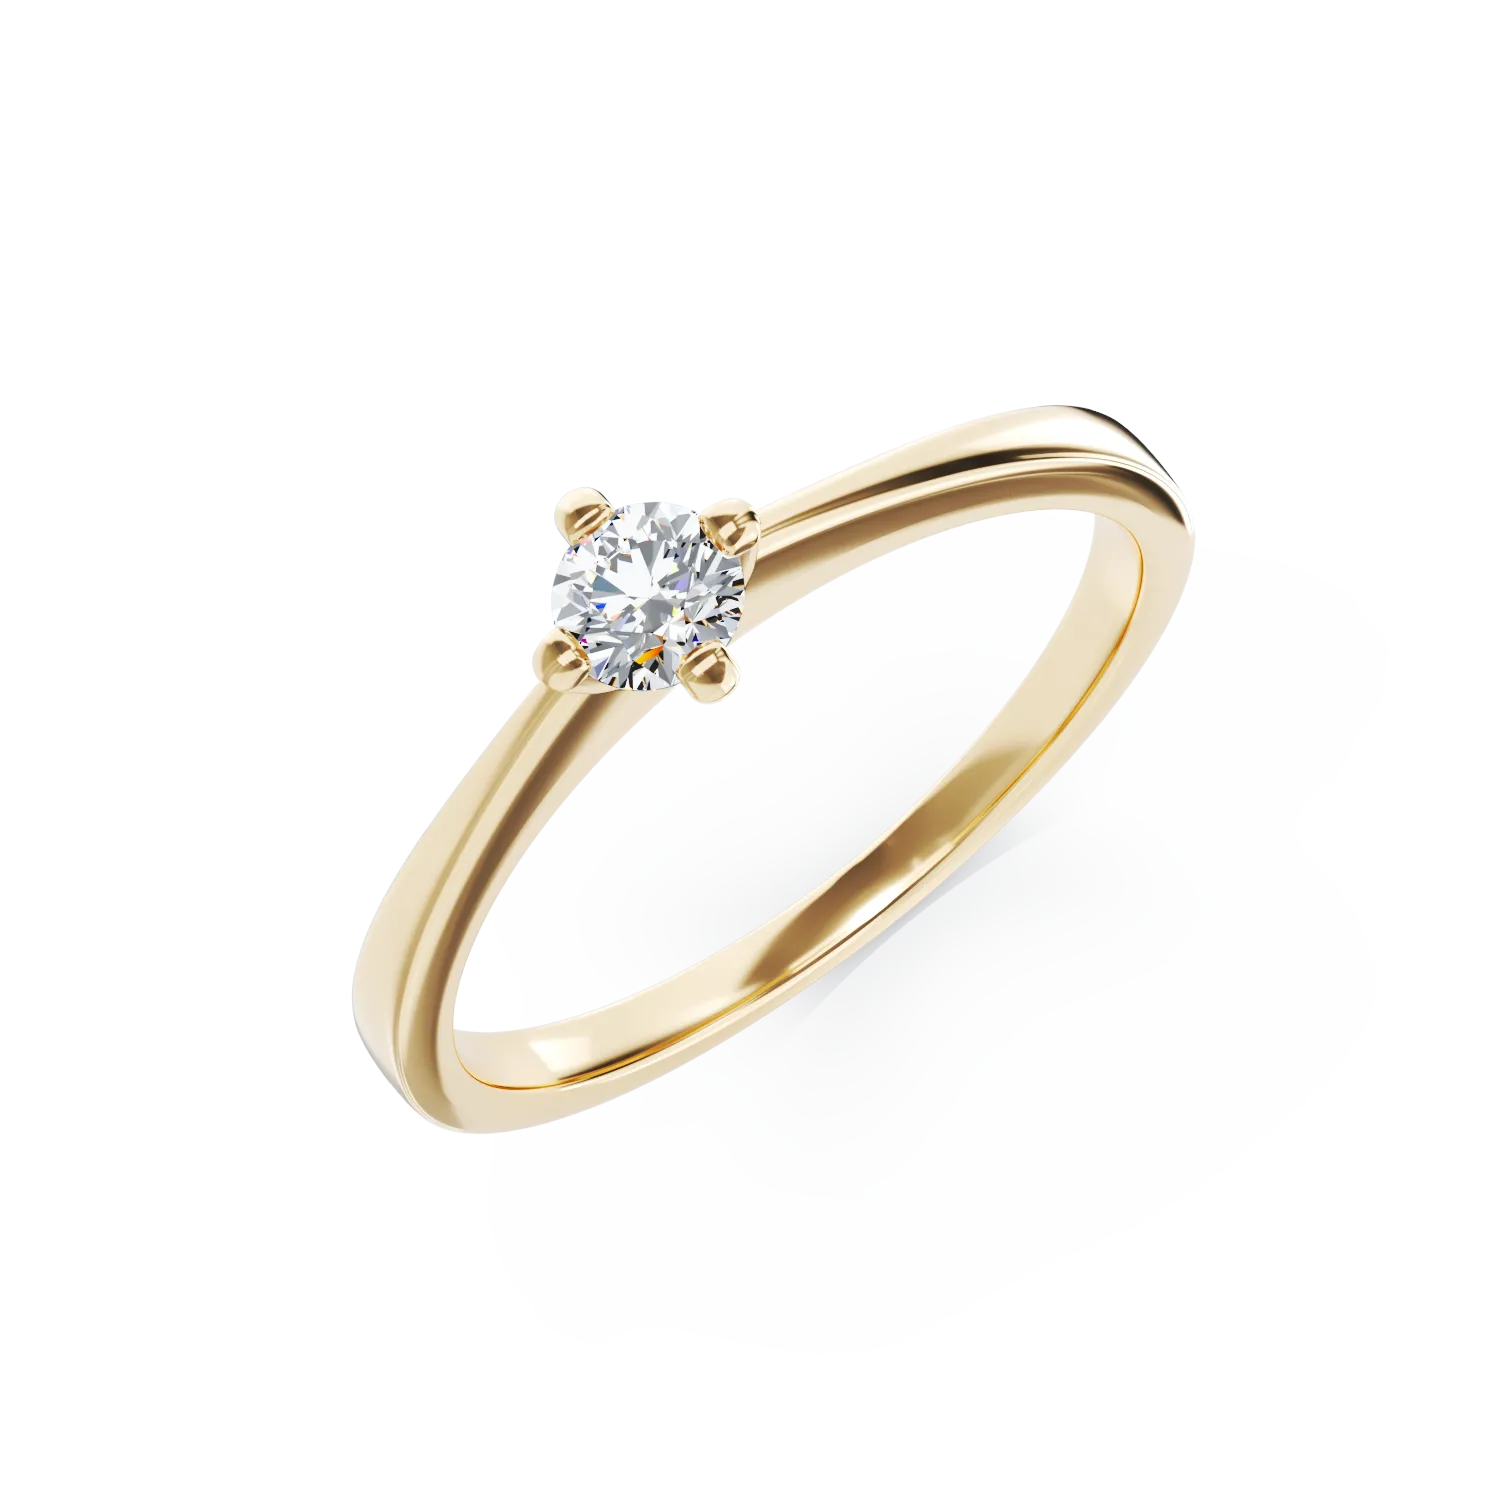 Годежен пръстен от 18K жълто злато с диамант пасианс 0.25ct